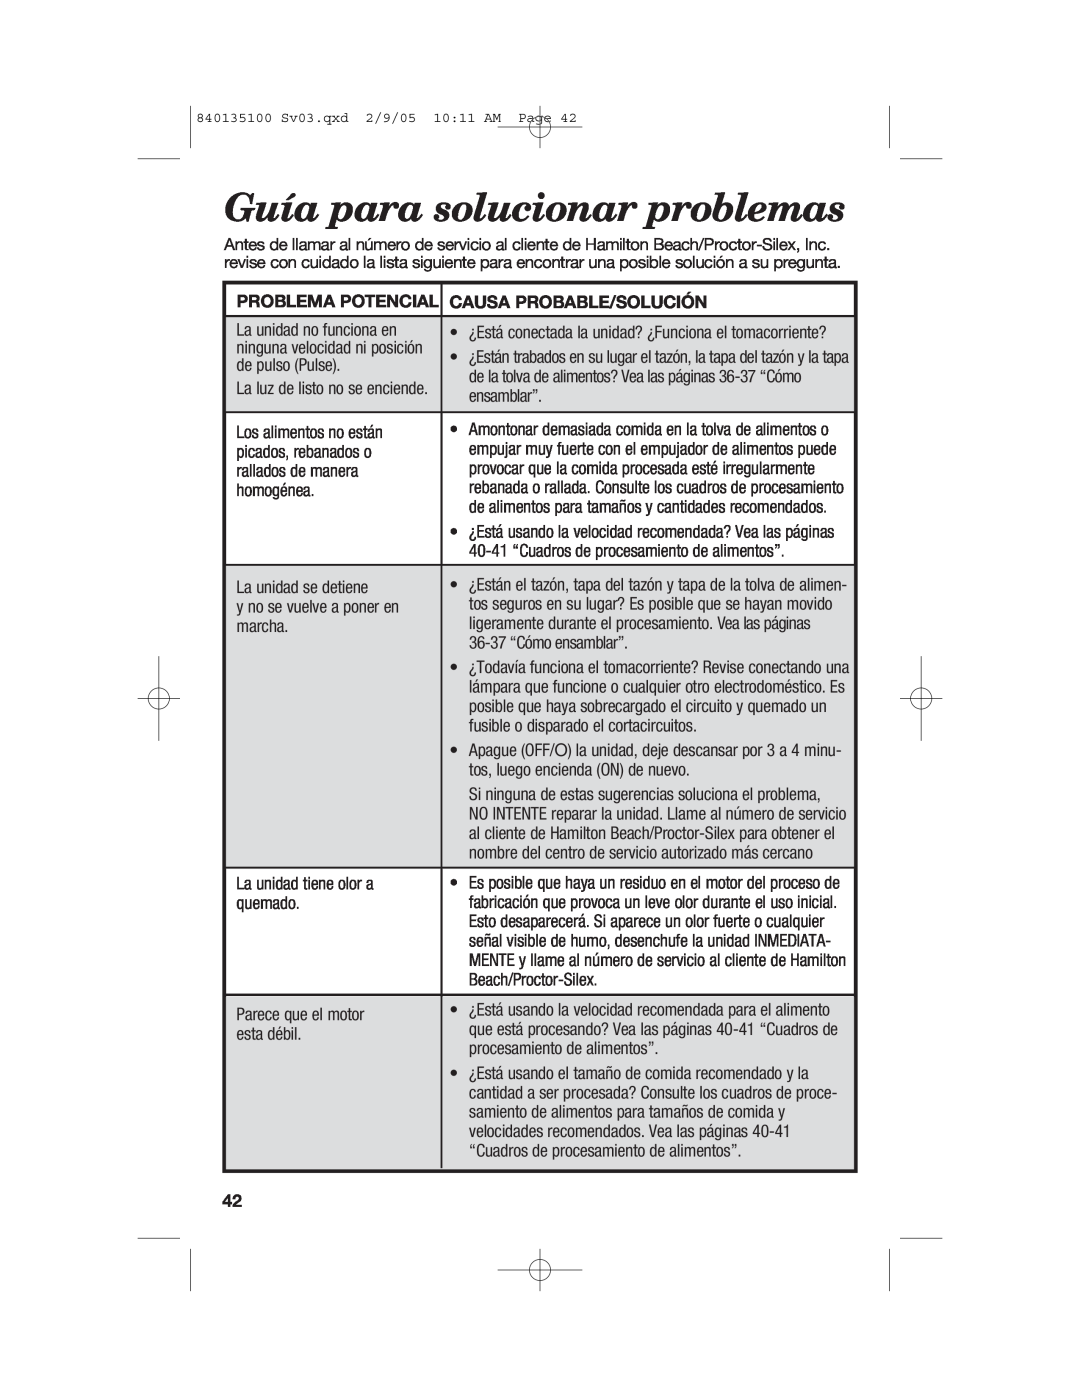 Hamilton Beach 840135100 manual Guía para solucionar problemas, Problema Potencial, Causa Probable/Solución 